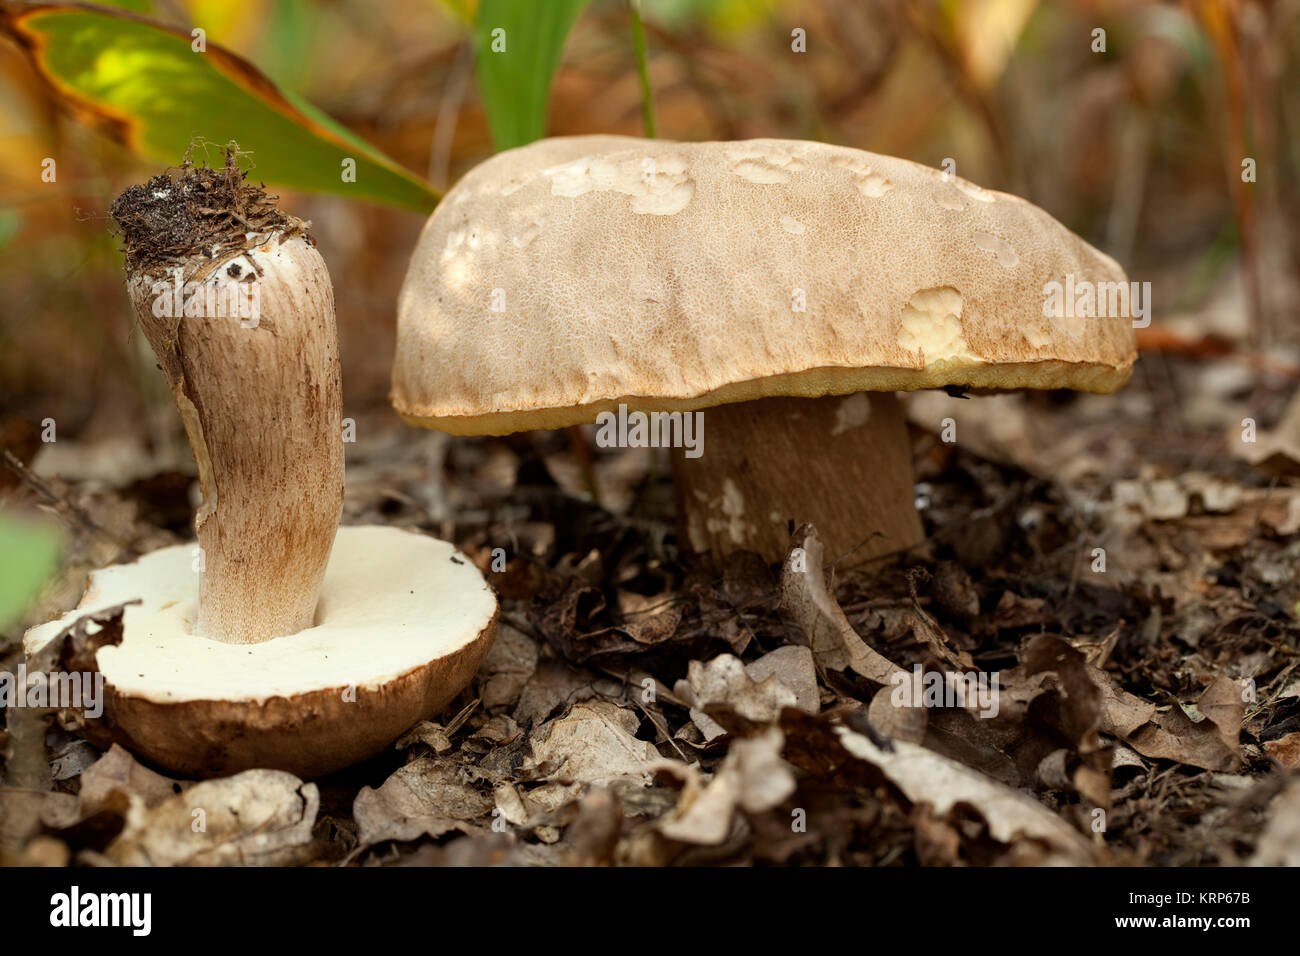 Boletus edible mushroom Stock Photo